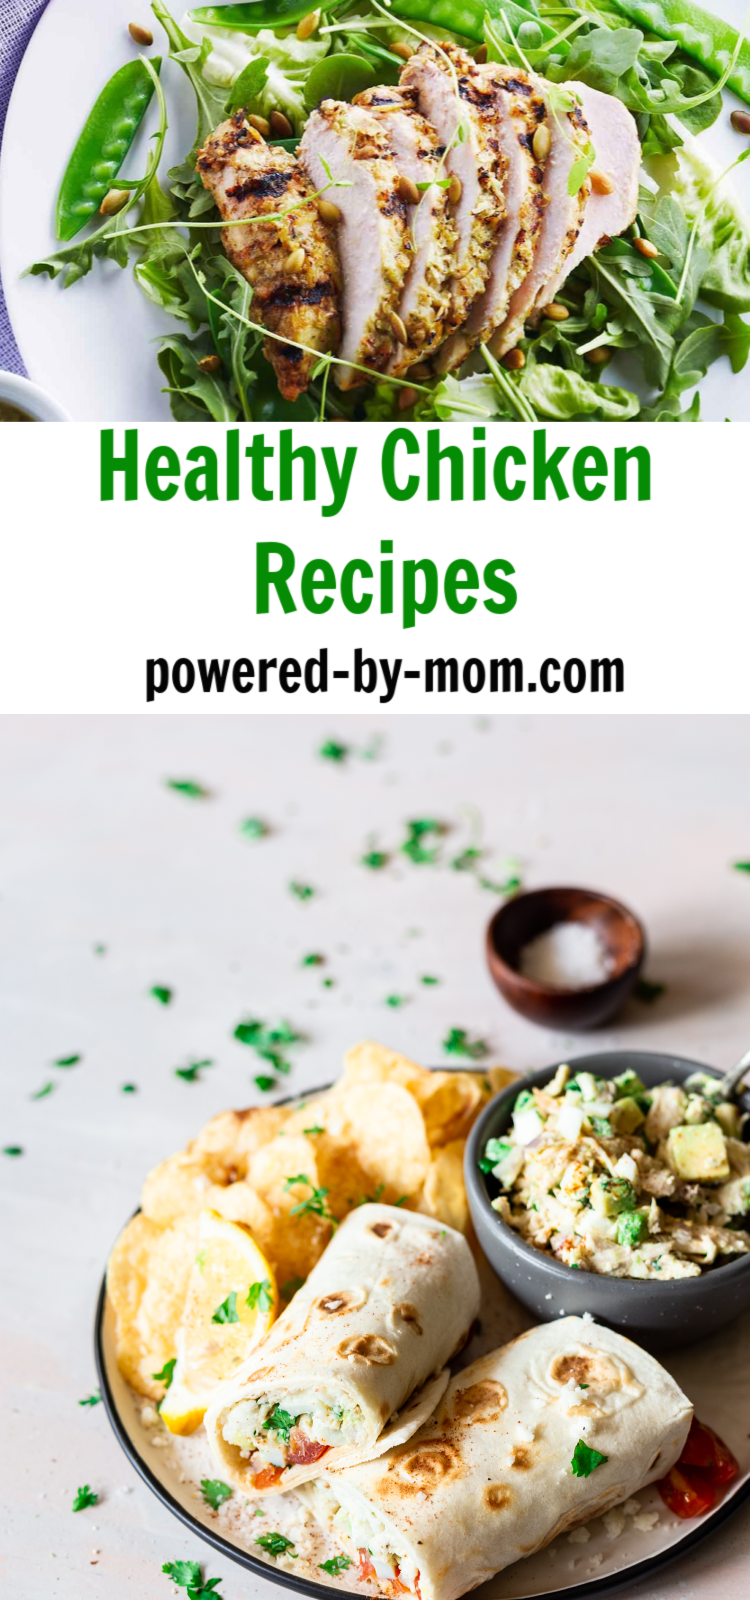 healthy chicken recipe ideas